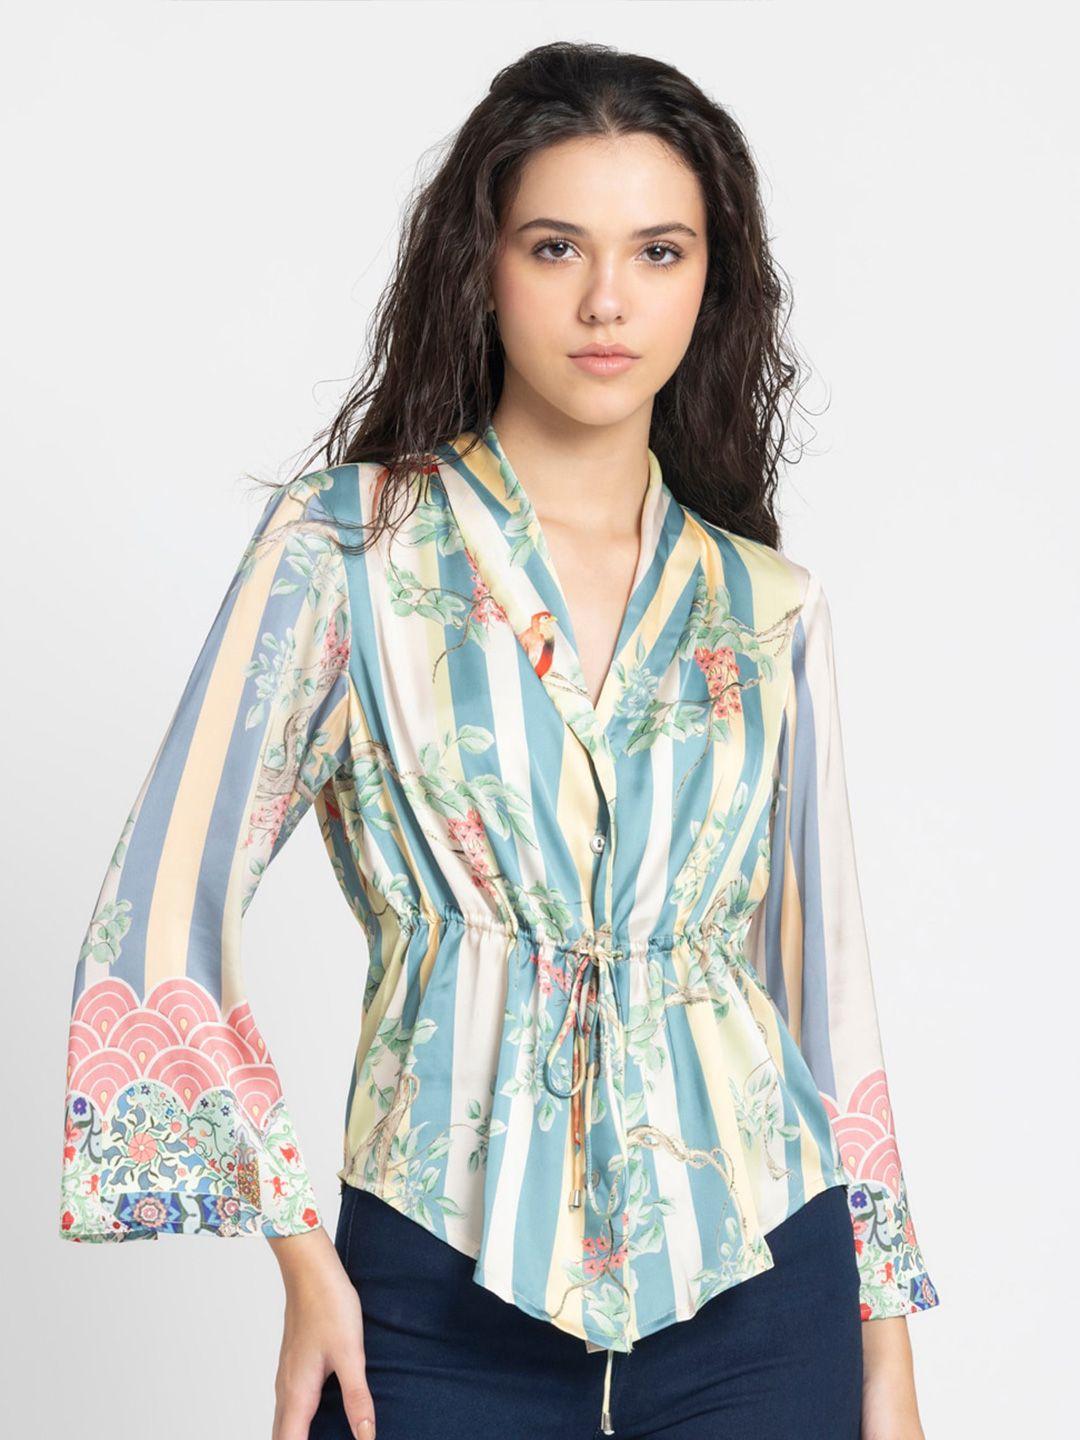 shaye floral printed smart casual shirt